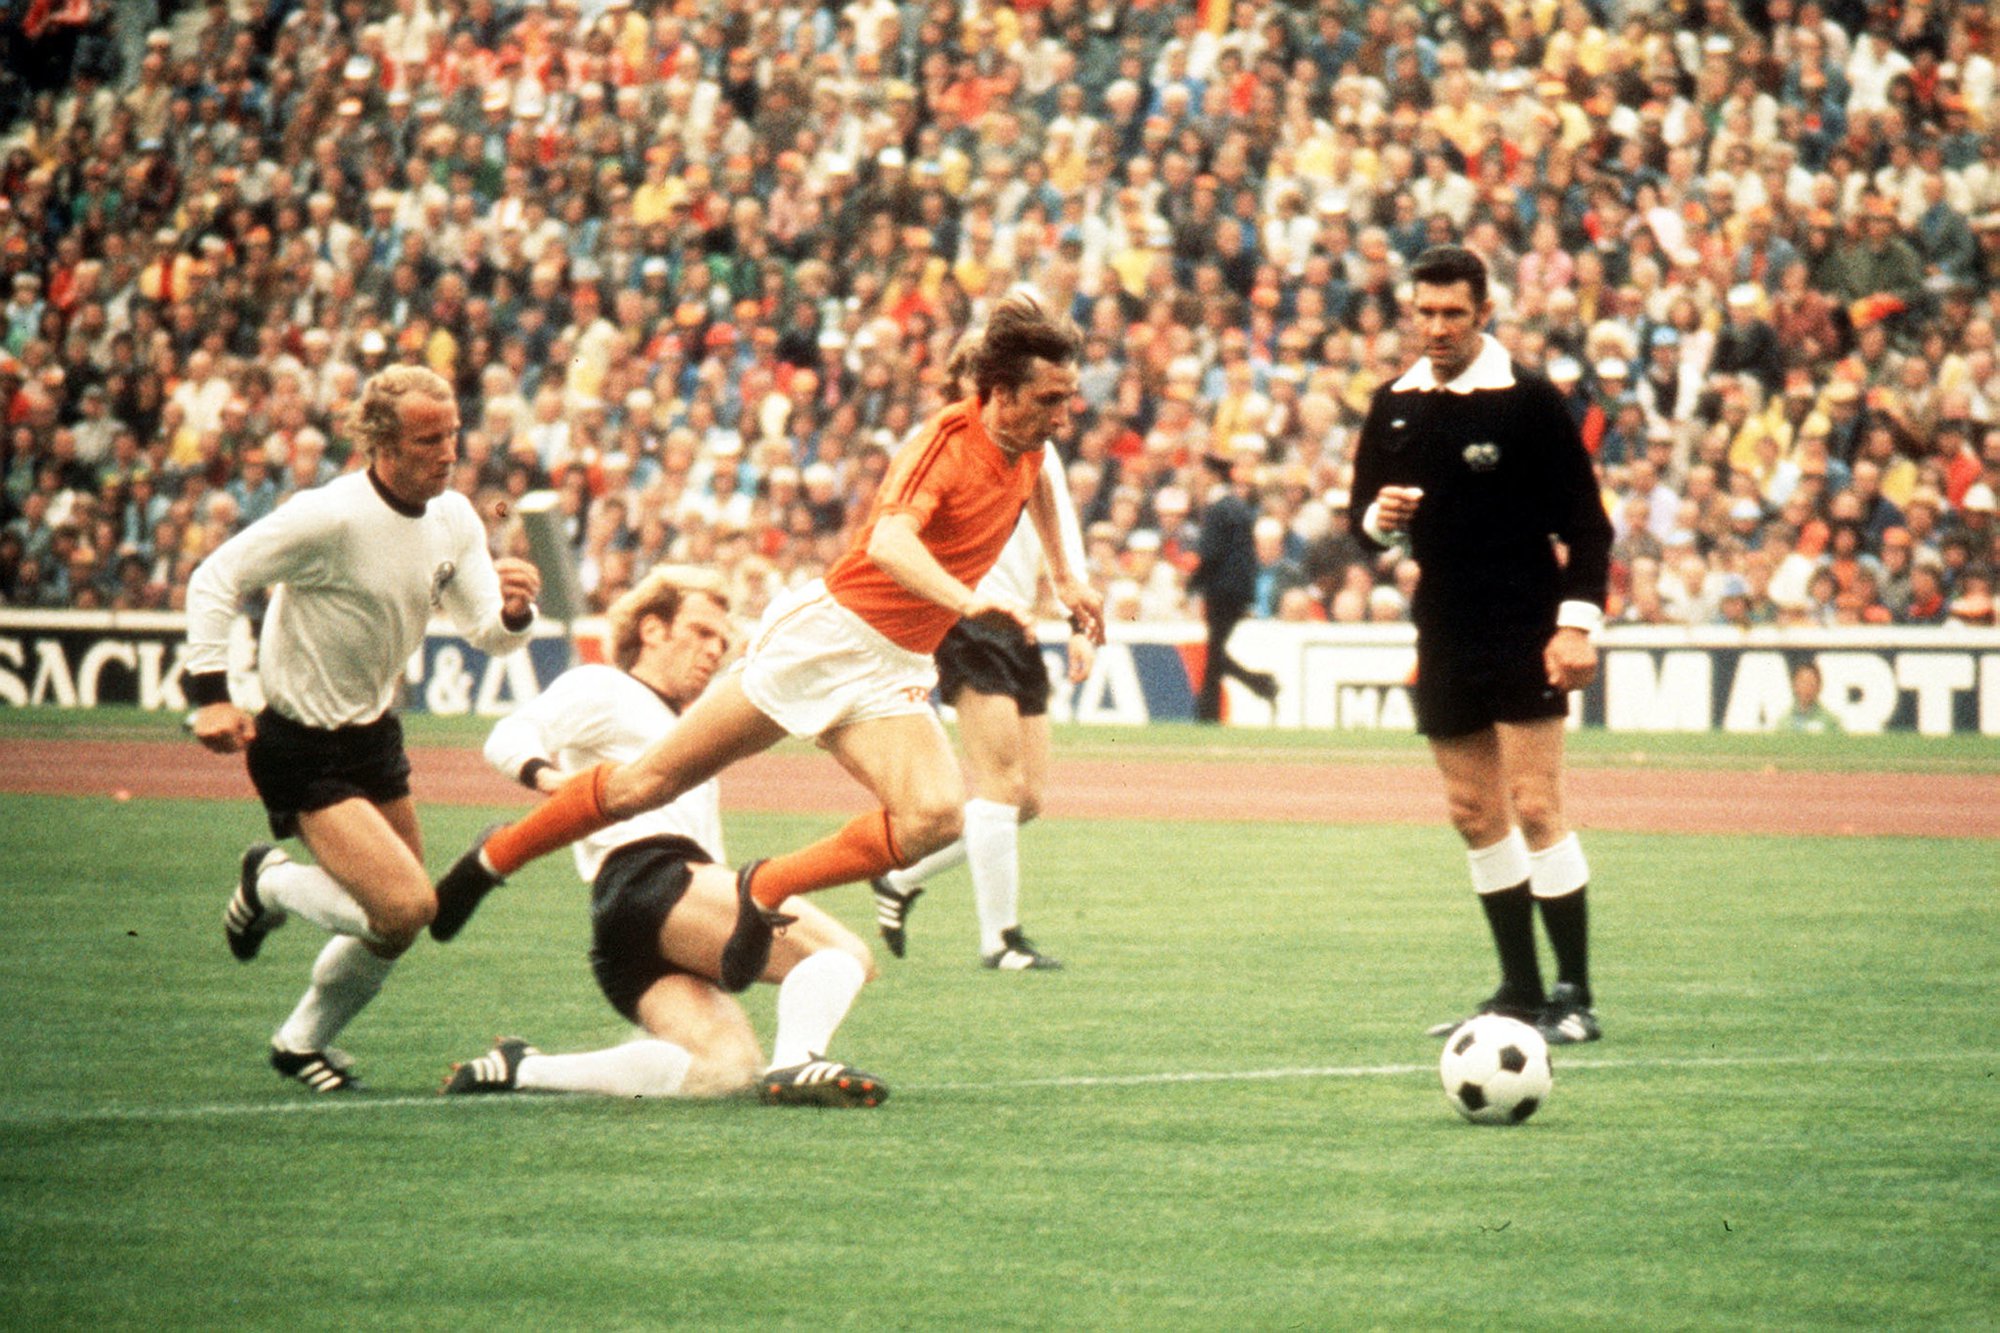 “Hoàng đế” Beckenbauer đã làm gì để hạ gục “Thánh” Cruyff tại World Cup 1974? - Ảnh 4.